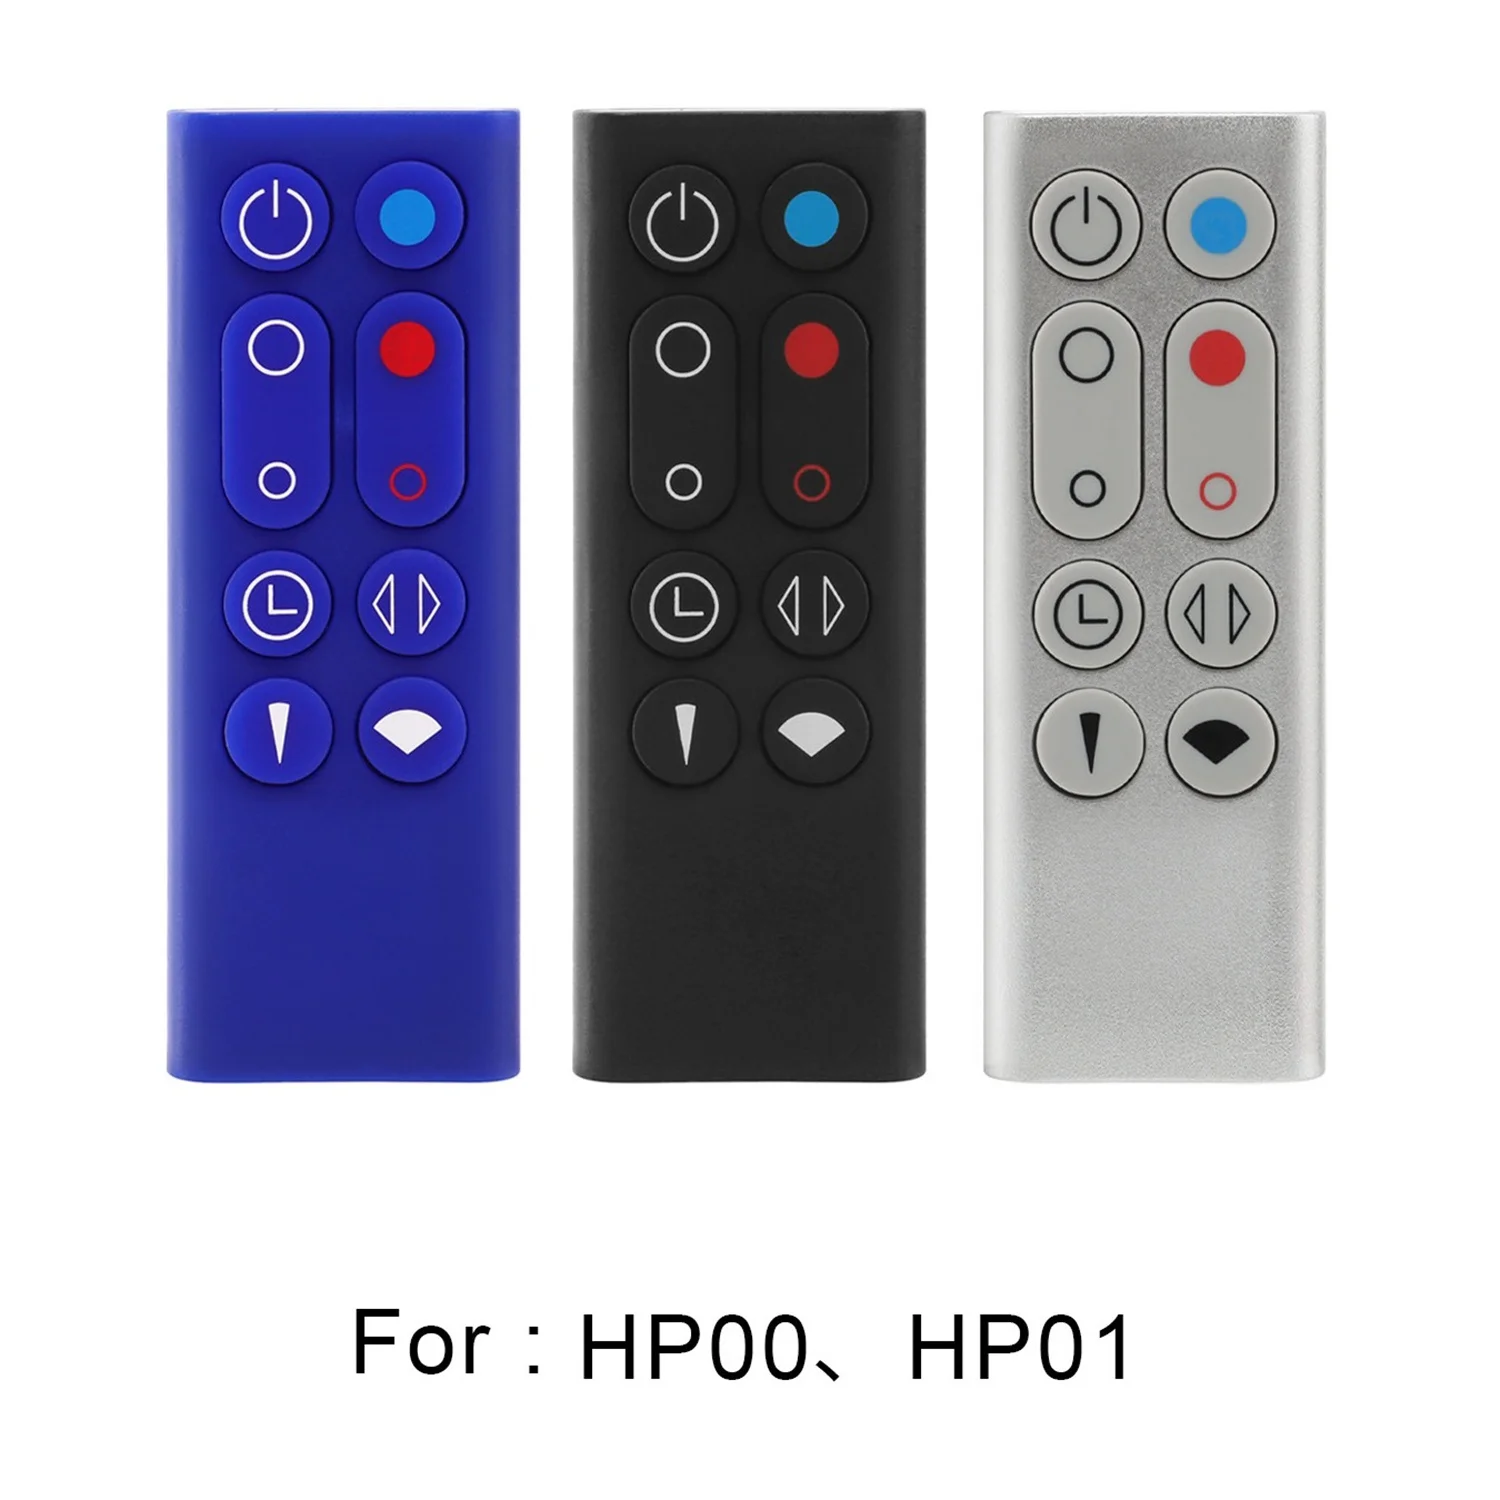 החלפת שליטה מרחוק על דייסון טהור חם+מגניב HP00 HP01 מטהר אוויר חימום מאוורר(C) - 5